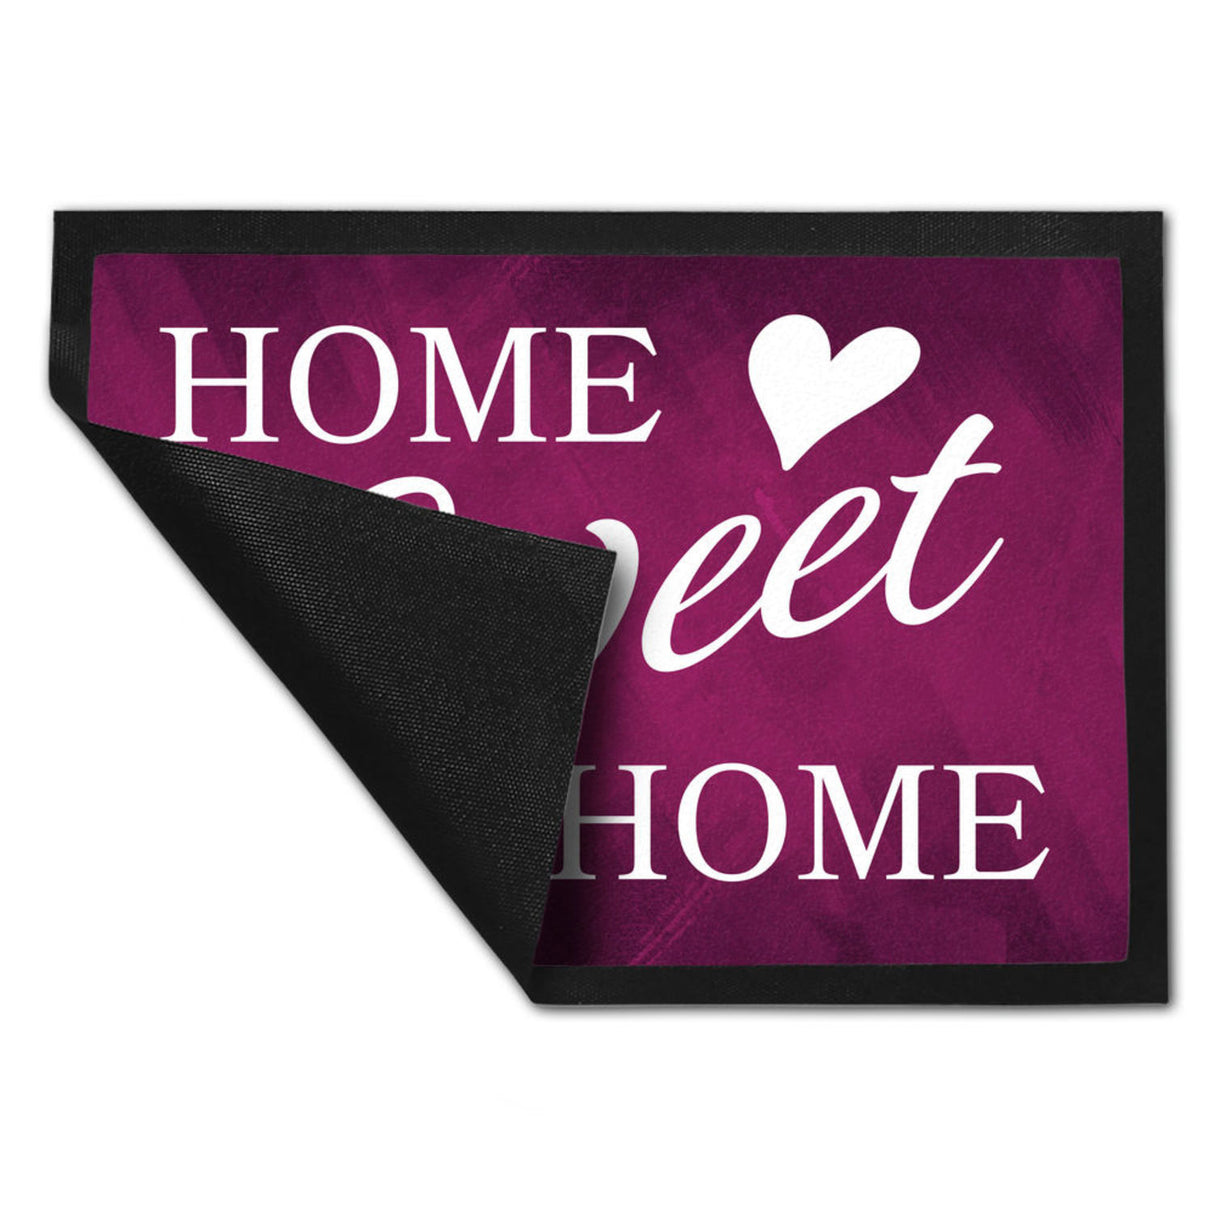 Home Sweet Home Fußmatte mit eleganter Aufschrift auf schwarzem Hintergrund